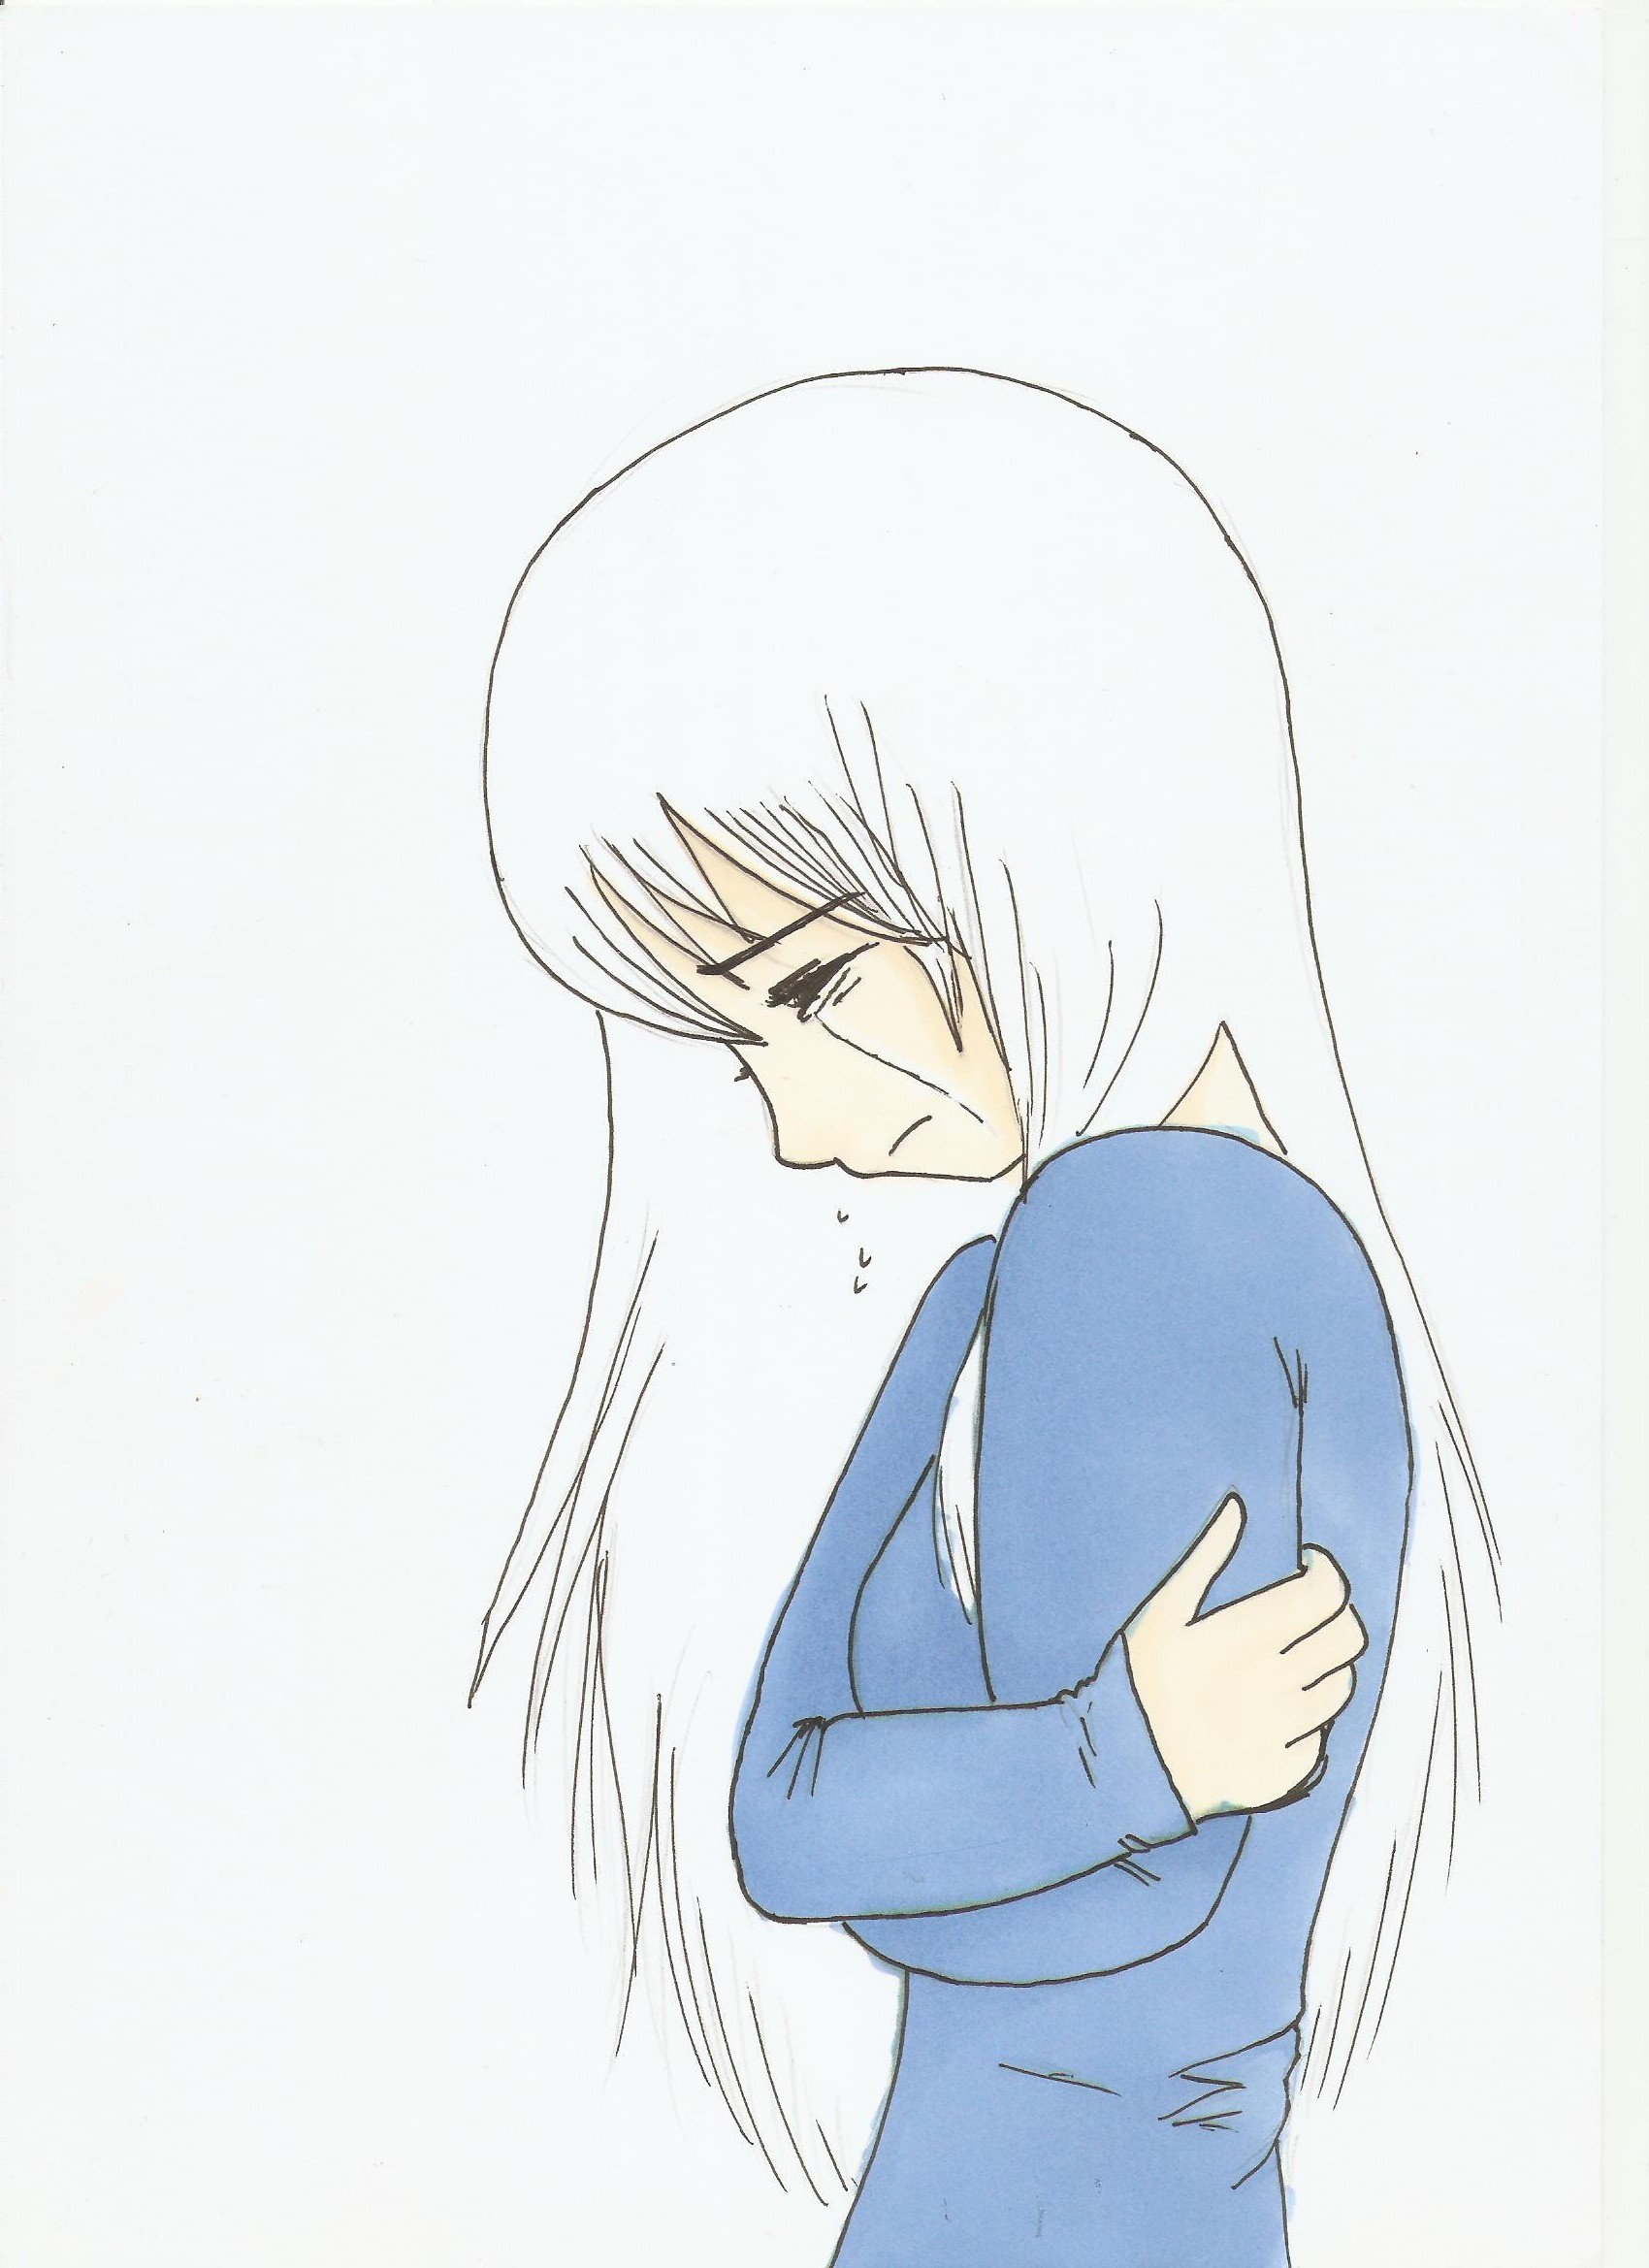 Sad Anime Girl Crying Sketch Drawing Skill